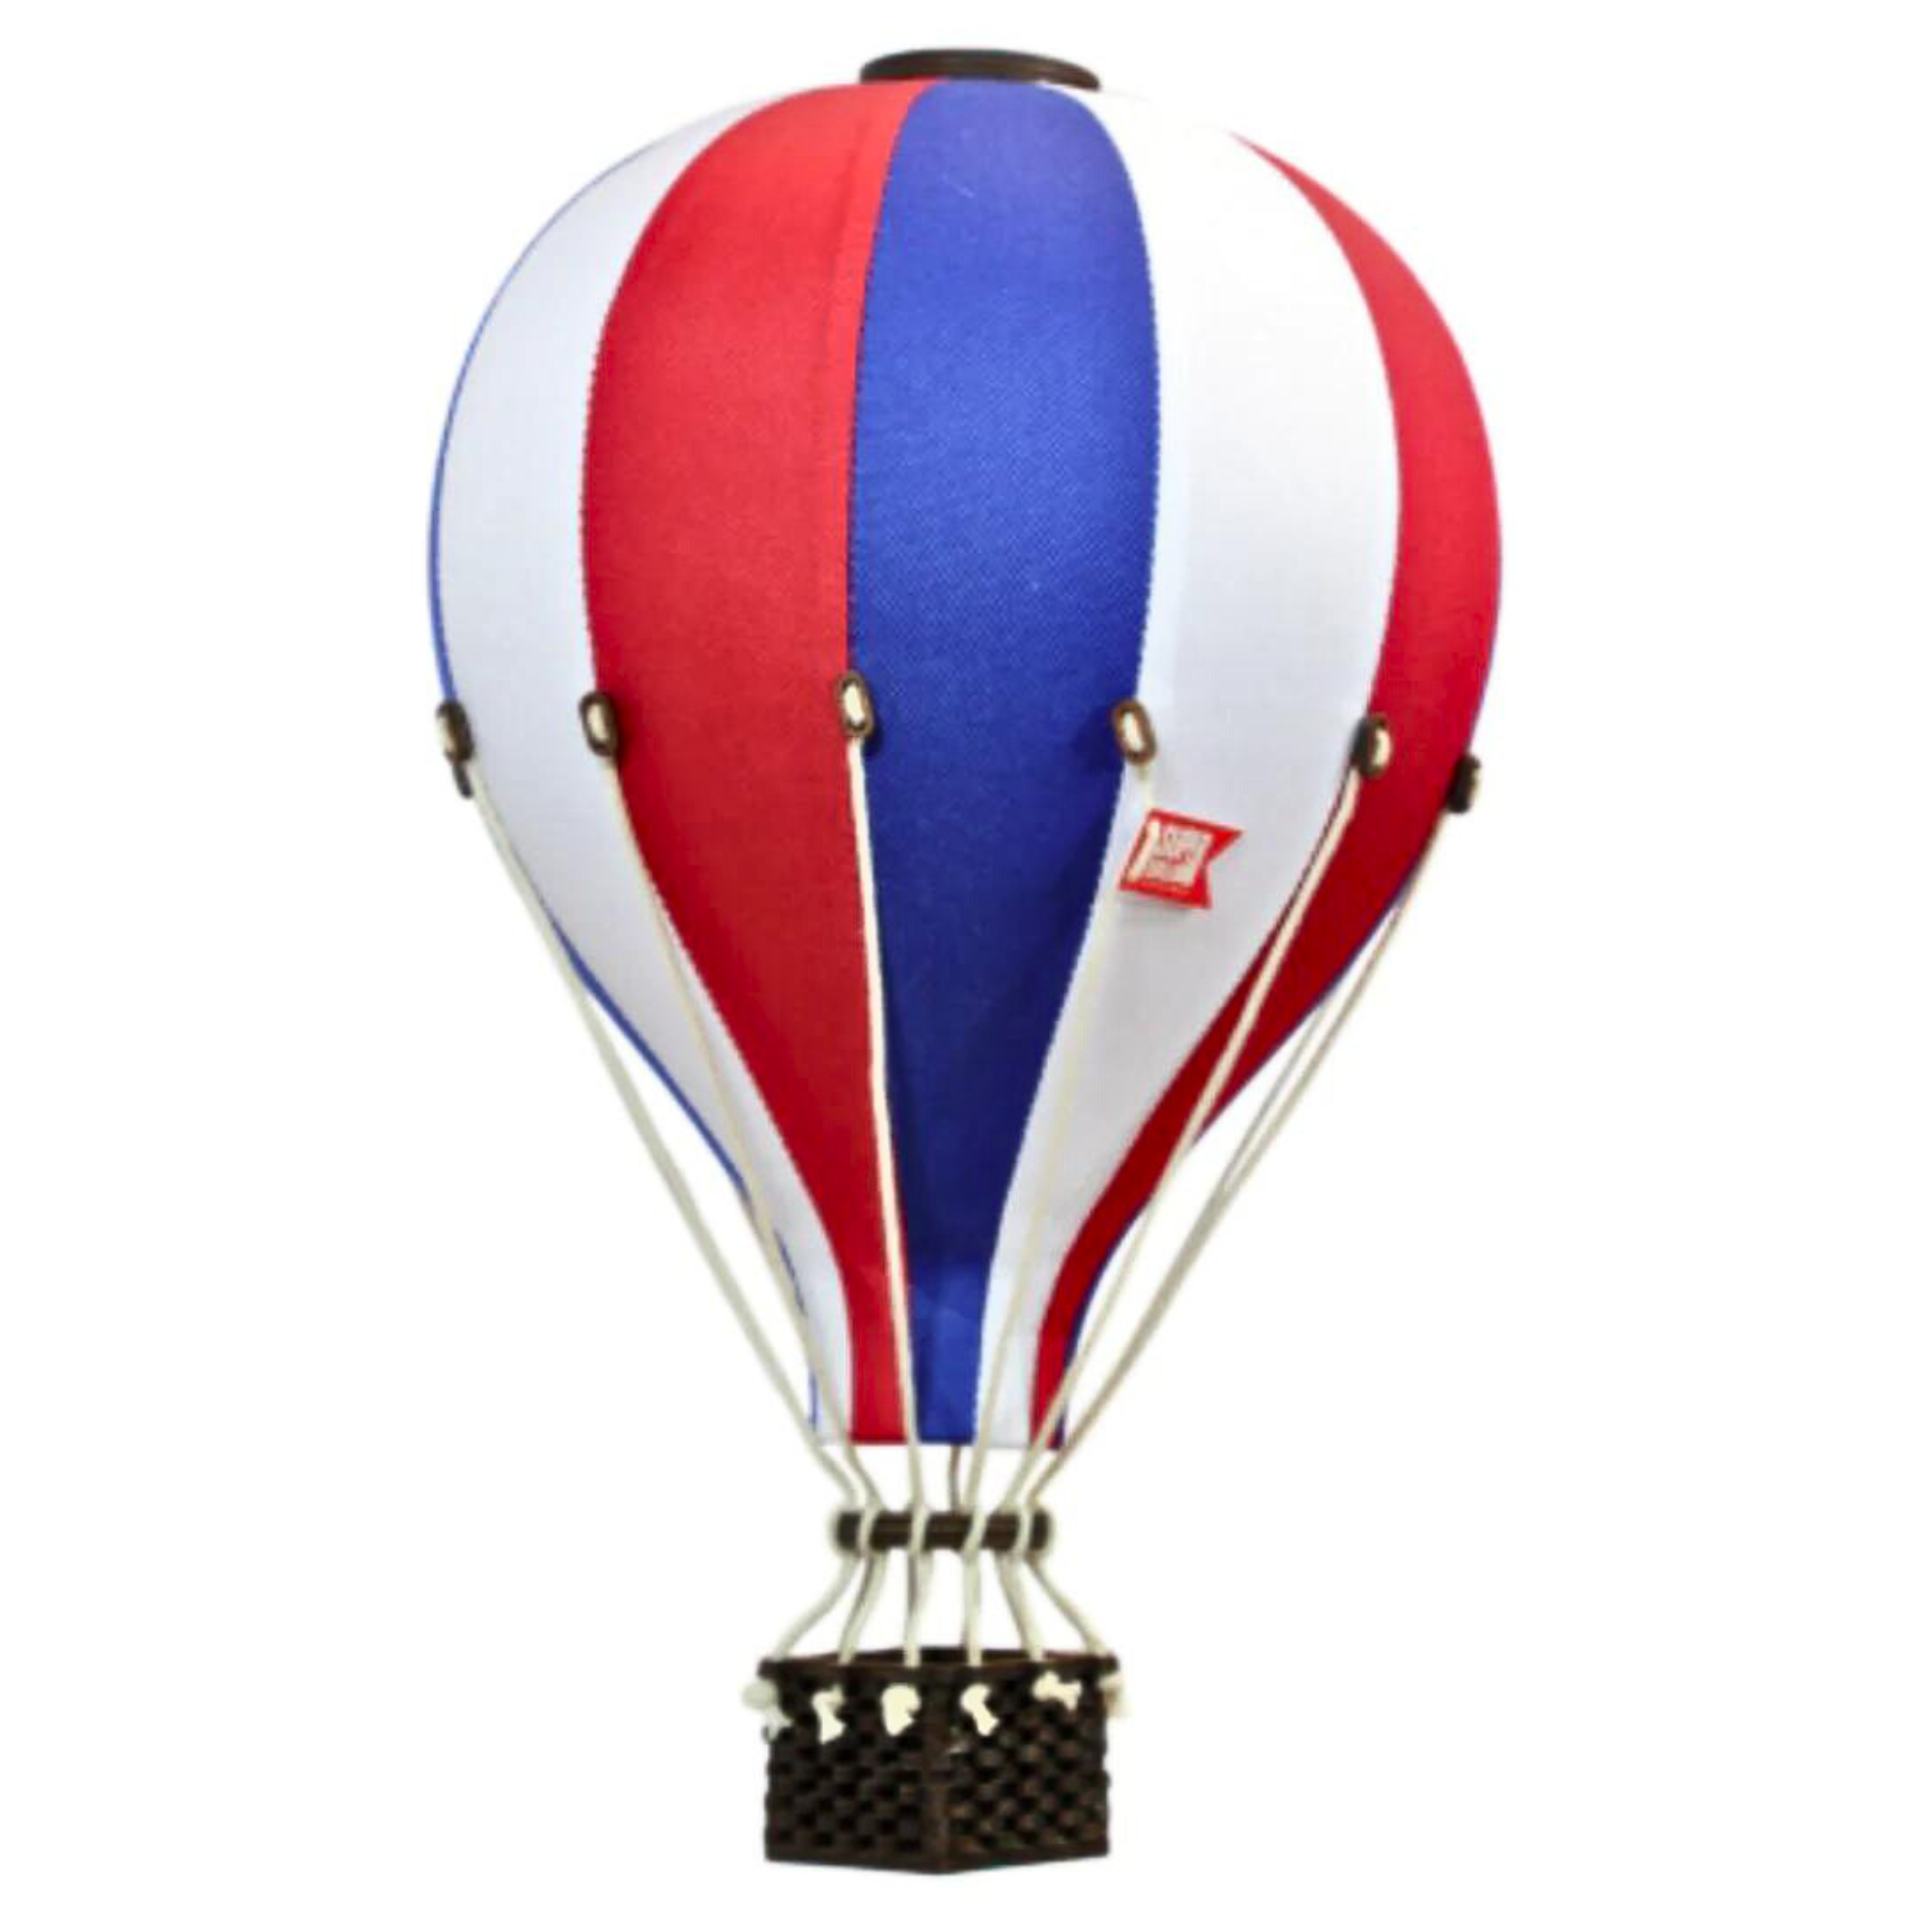 Super Balloon air balloon - Red | White | Blue